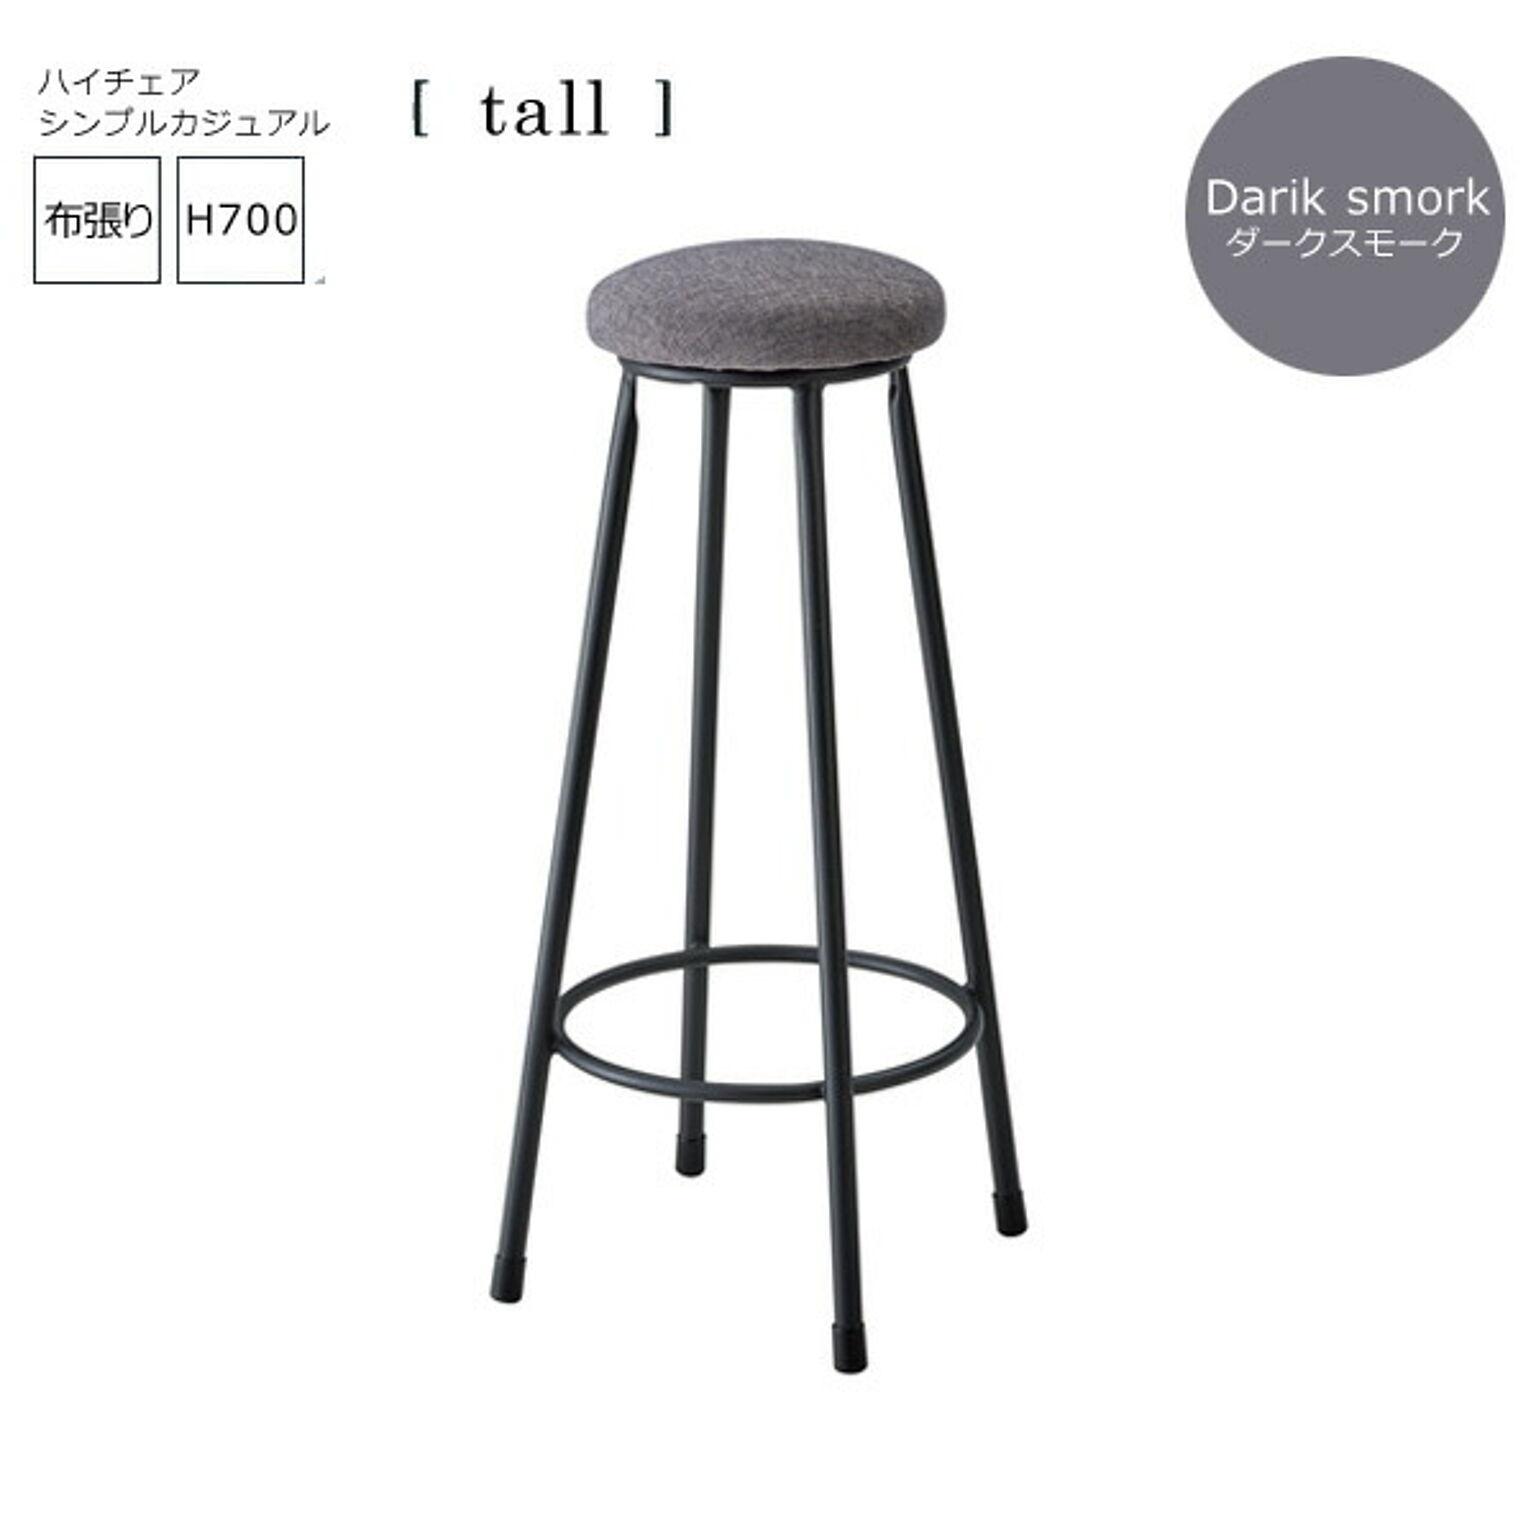 ダークスモーク： シンプルカジュアル バーチェアー布張【tall】 (アーバン) イス 椅子 いす ハイチェア カウンターチェア ハイスツール  高さ700mm